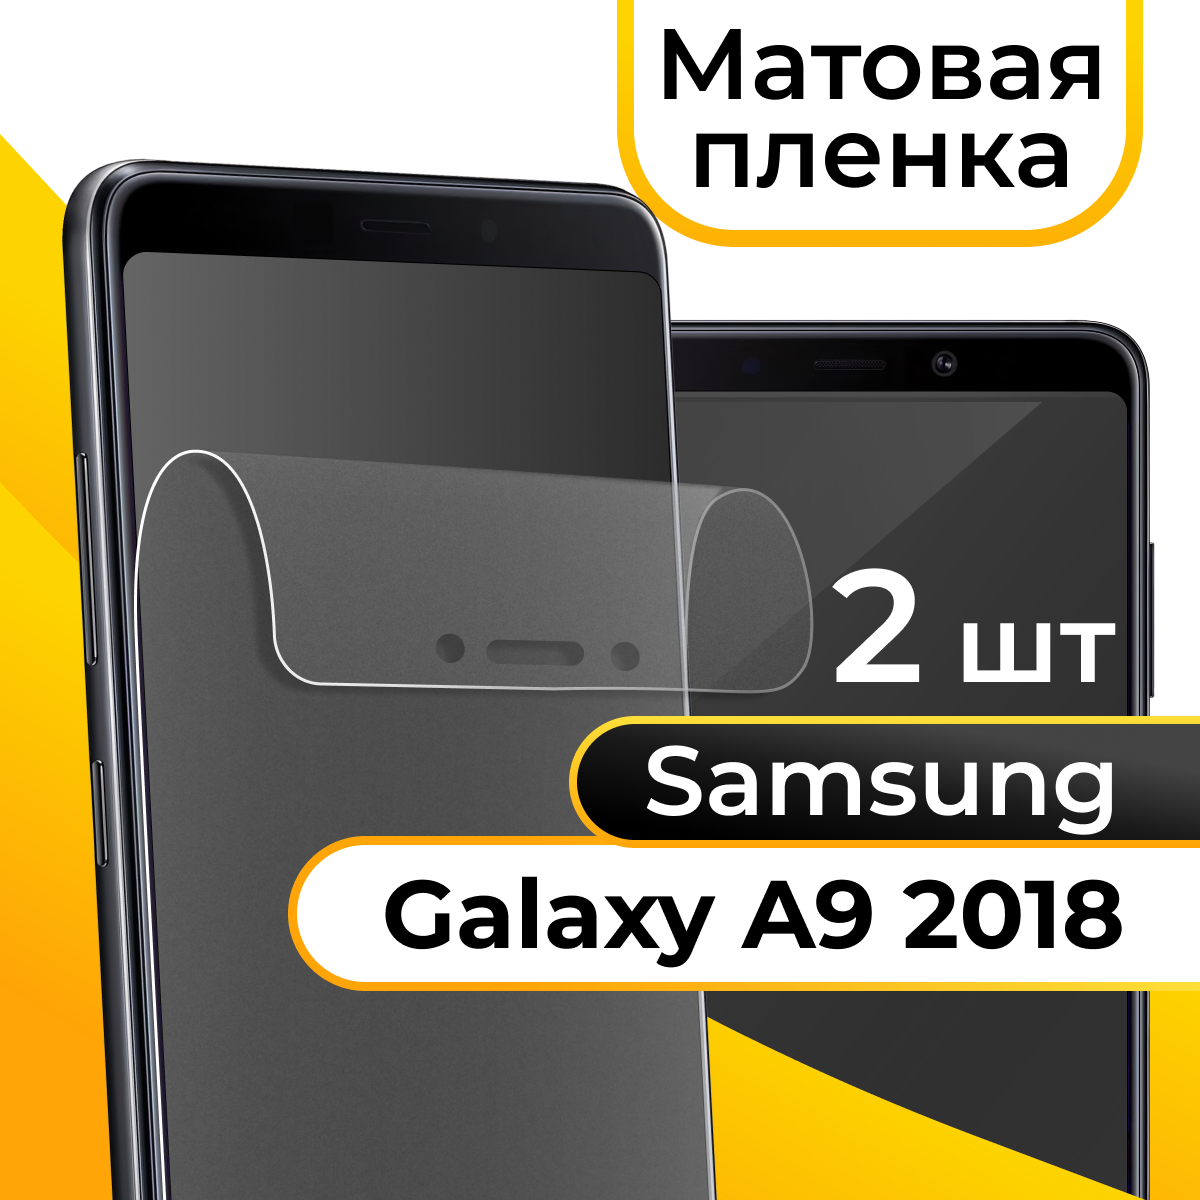 Матовая пленка для смартфона Samsung Galaxy A9 2018 / Защитная противоударная пленка на телефон Самсунг Галакси А9 2018 / Гидрогелевая пленка